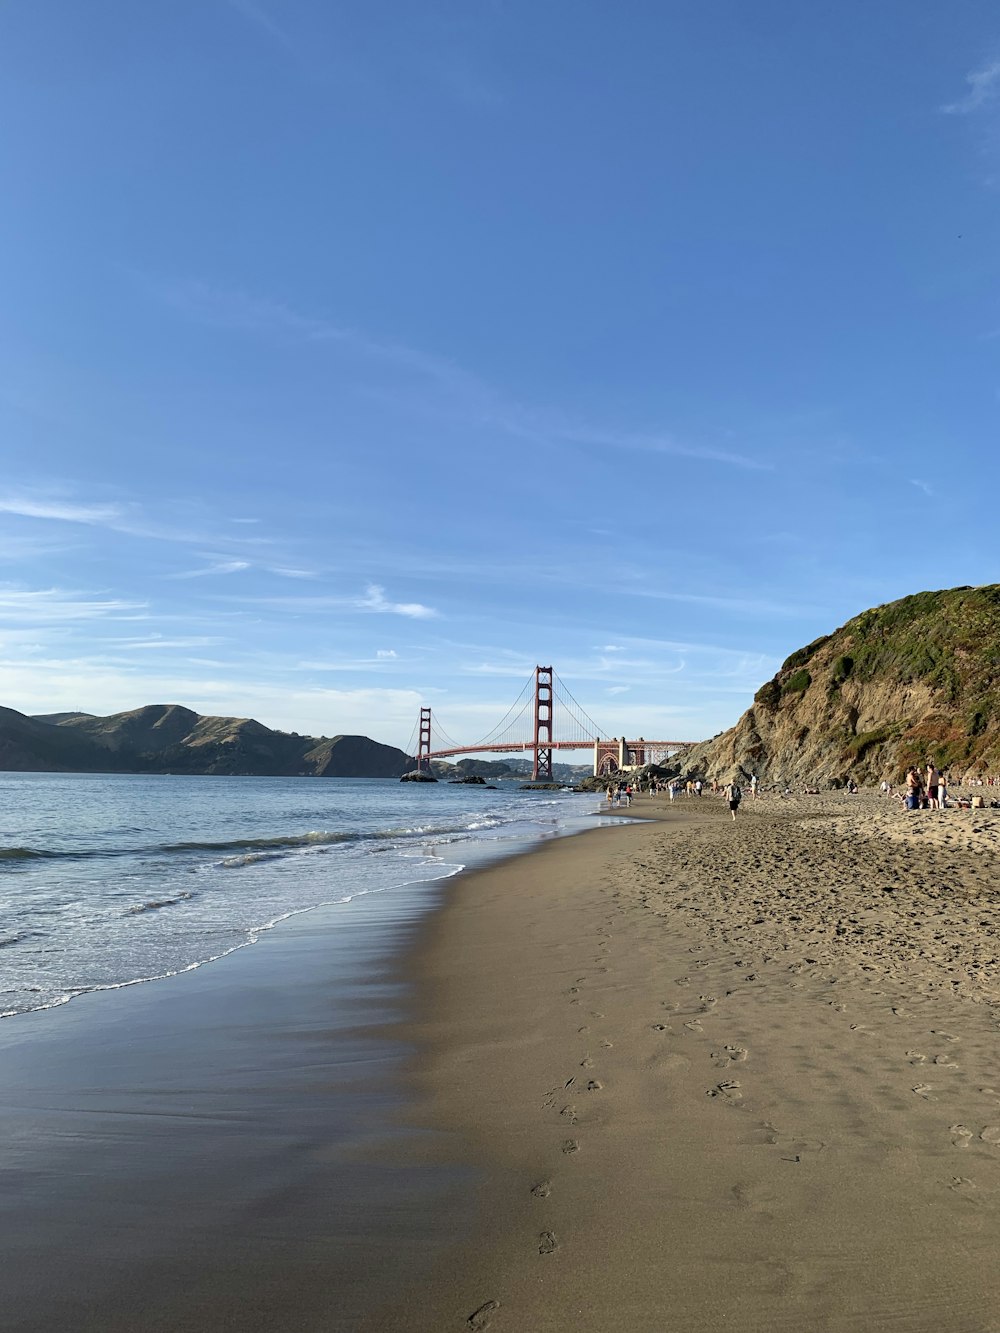 Golden Gate Bridge under blue and white skies